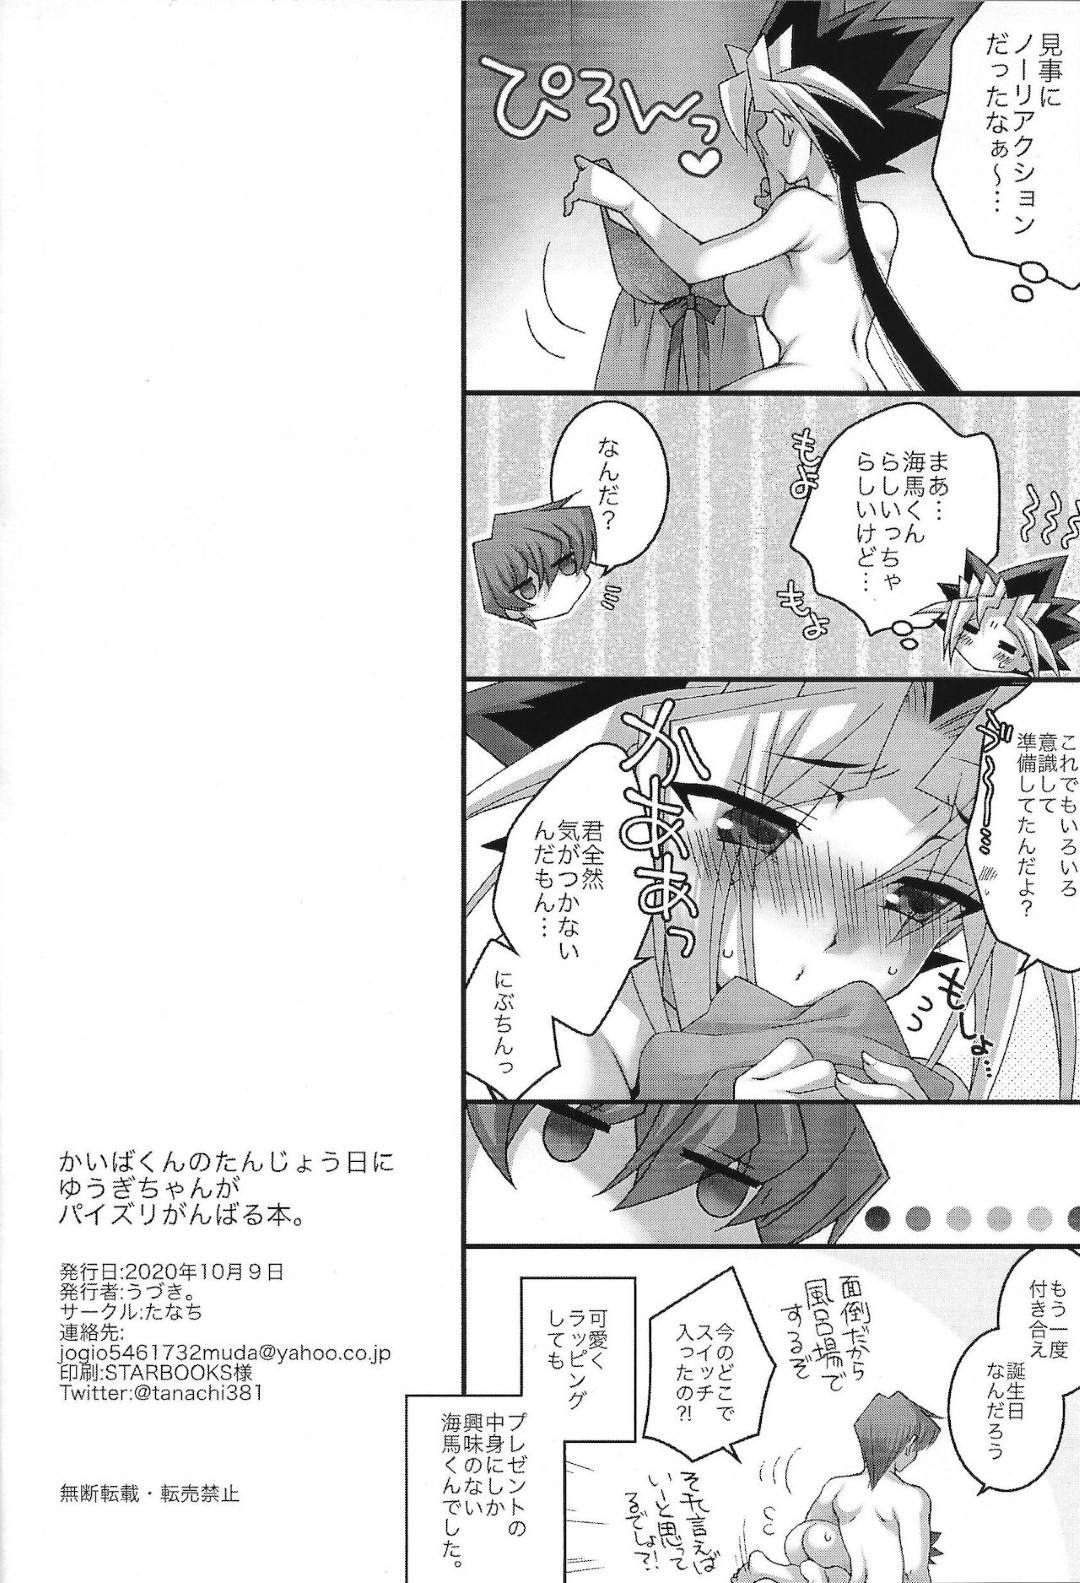 【エロ漫画】女の子の遊戯ちゃんは、海馬にパイズリでご奉仕するとイチャラブセックスでアクメする【うづき。】